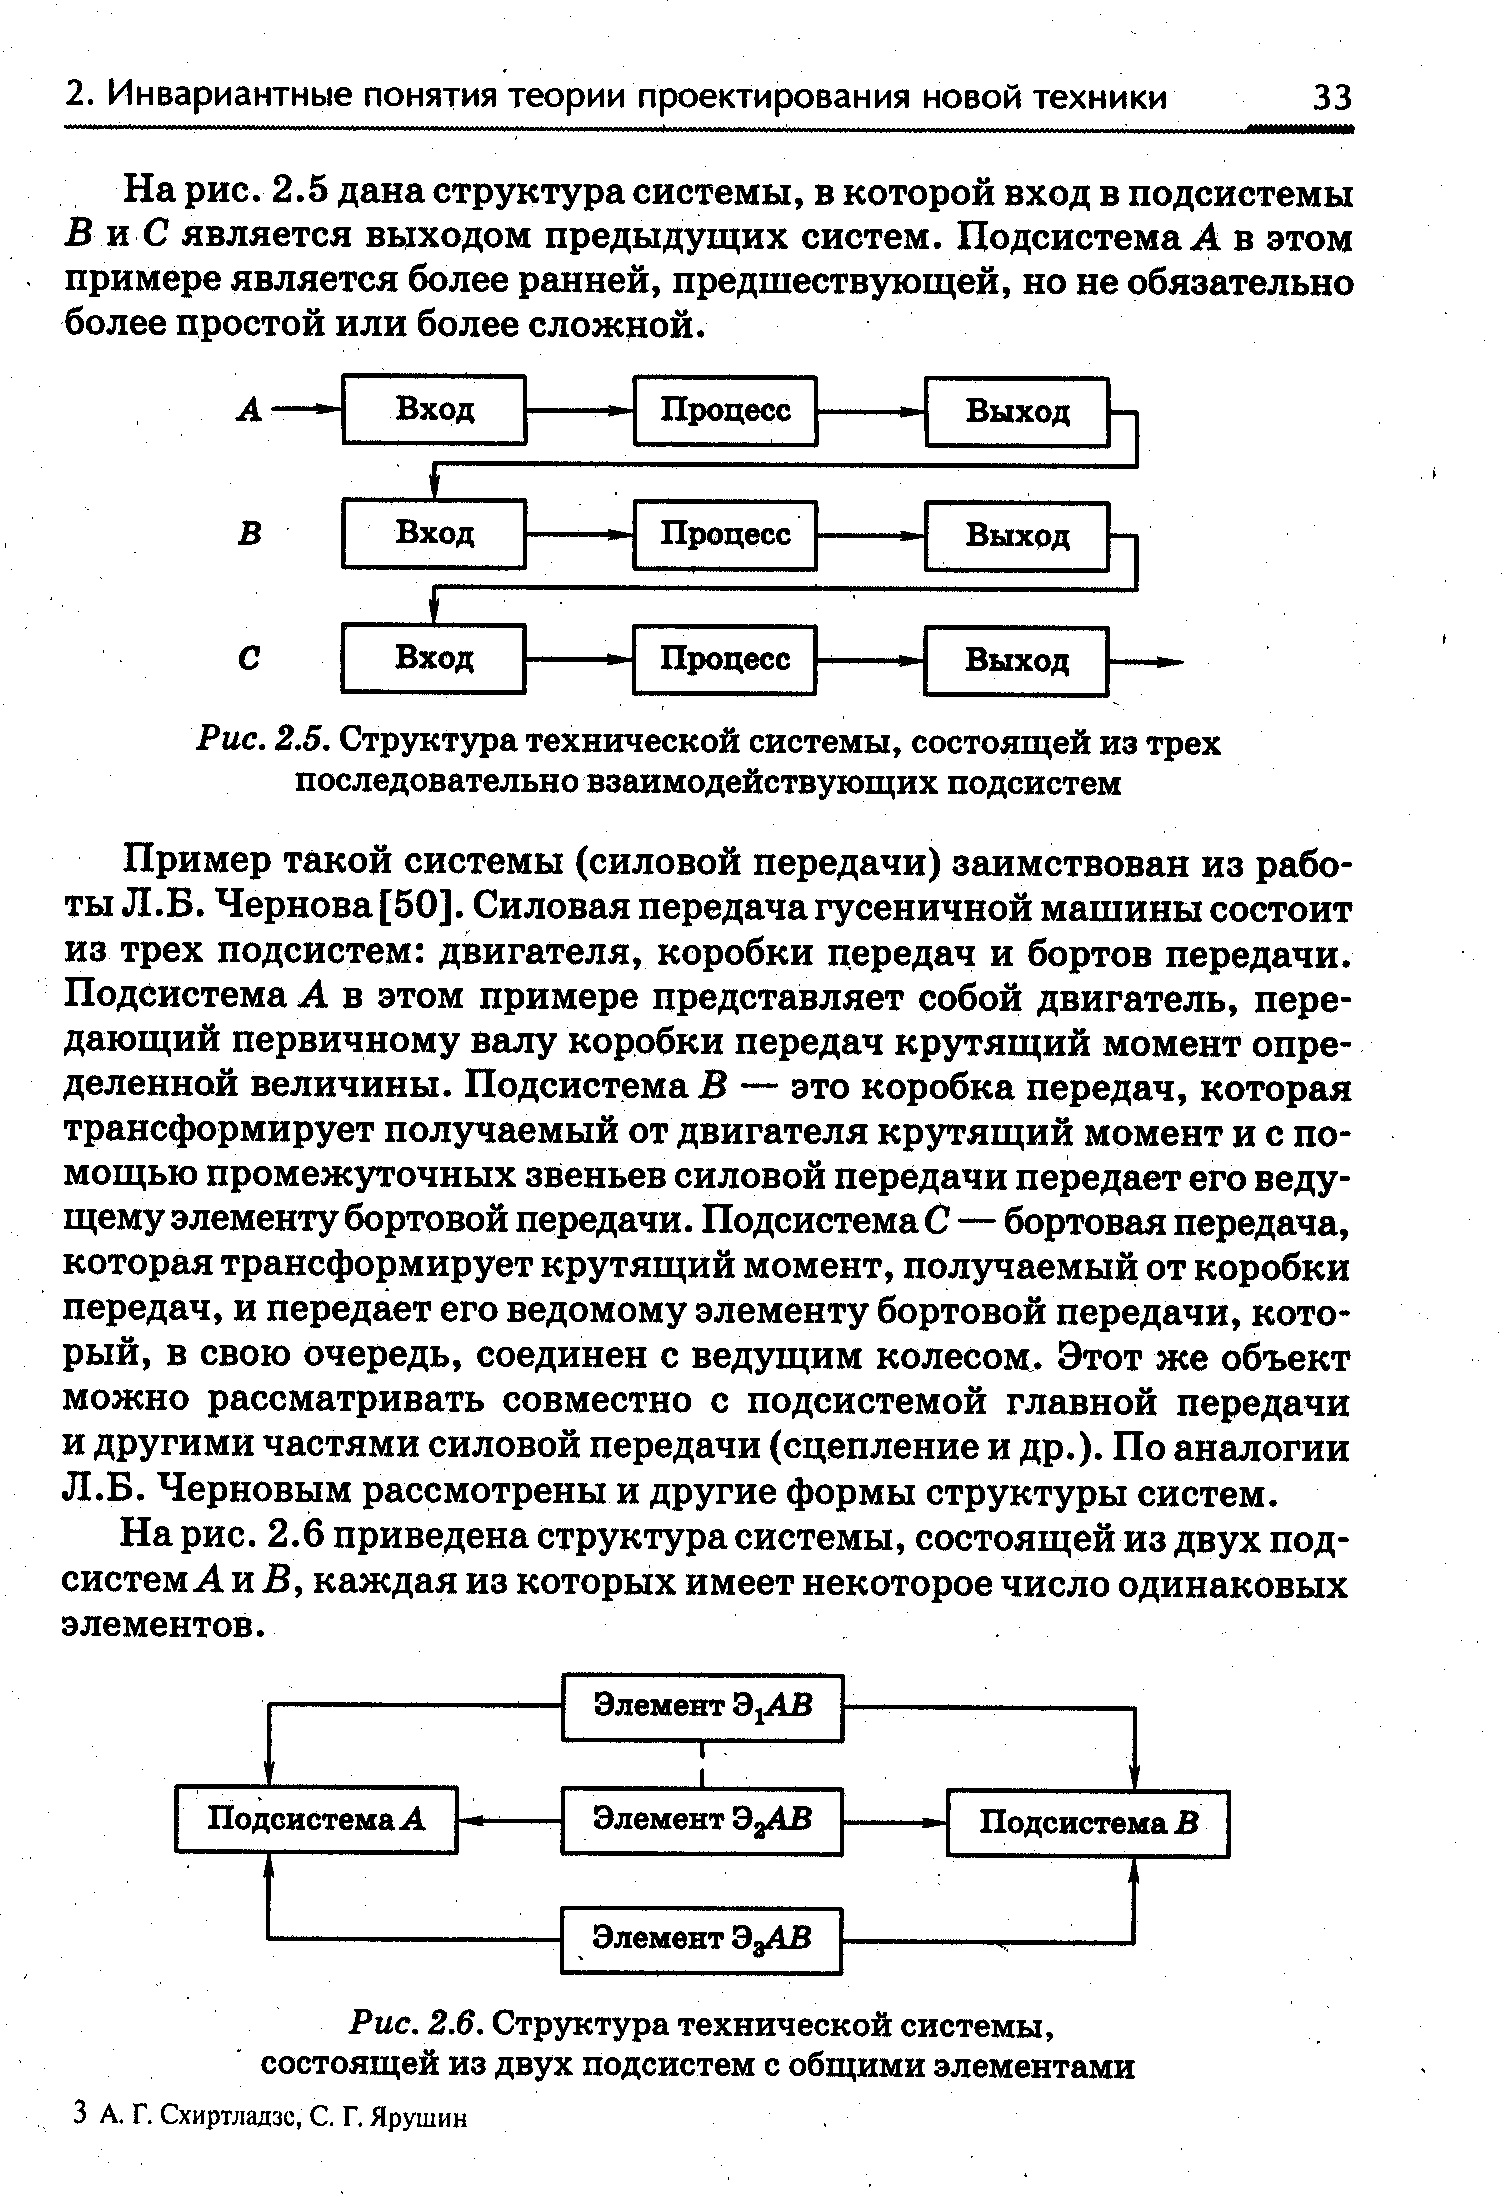 Рис. 2.6. Структура технической системы, состоящей из двух подсистем с общими элементами
